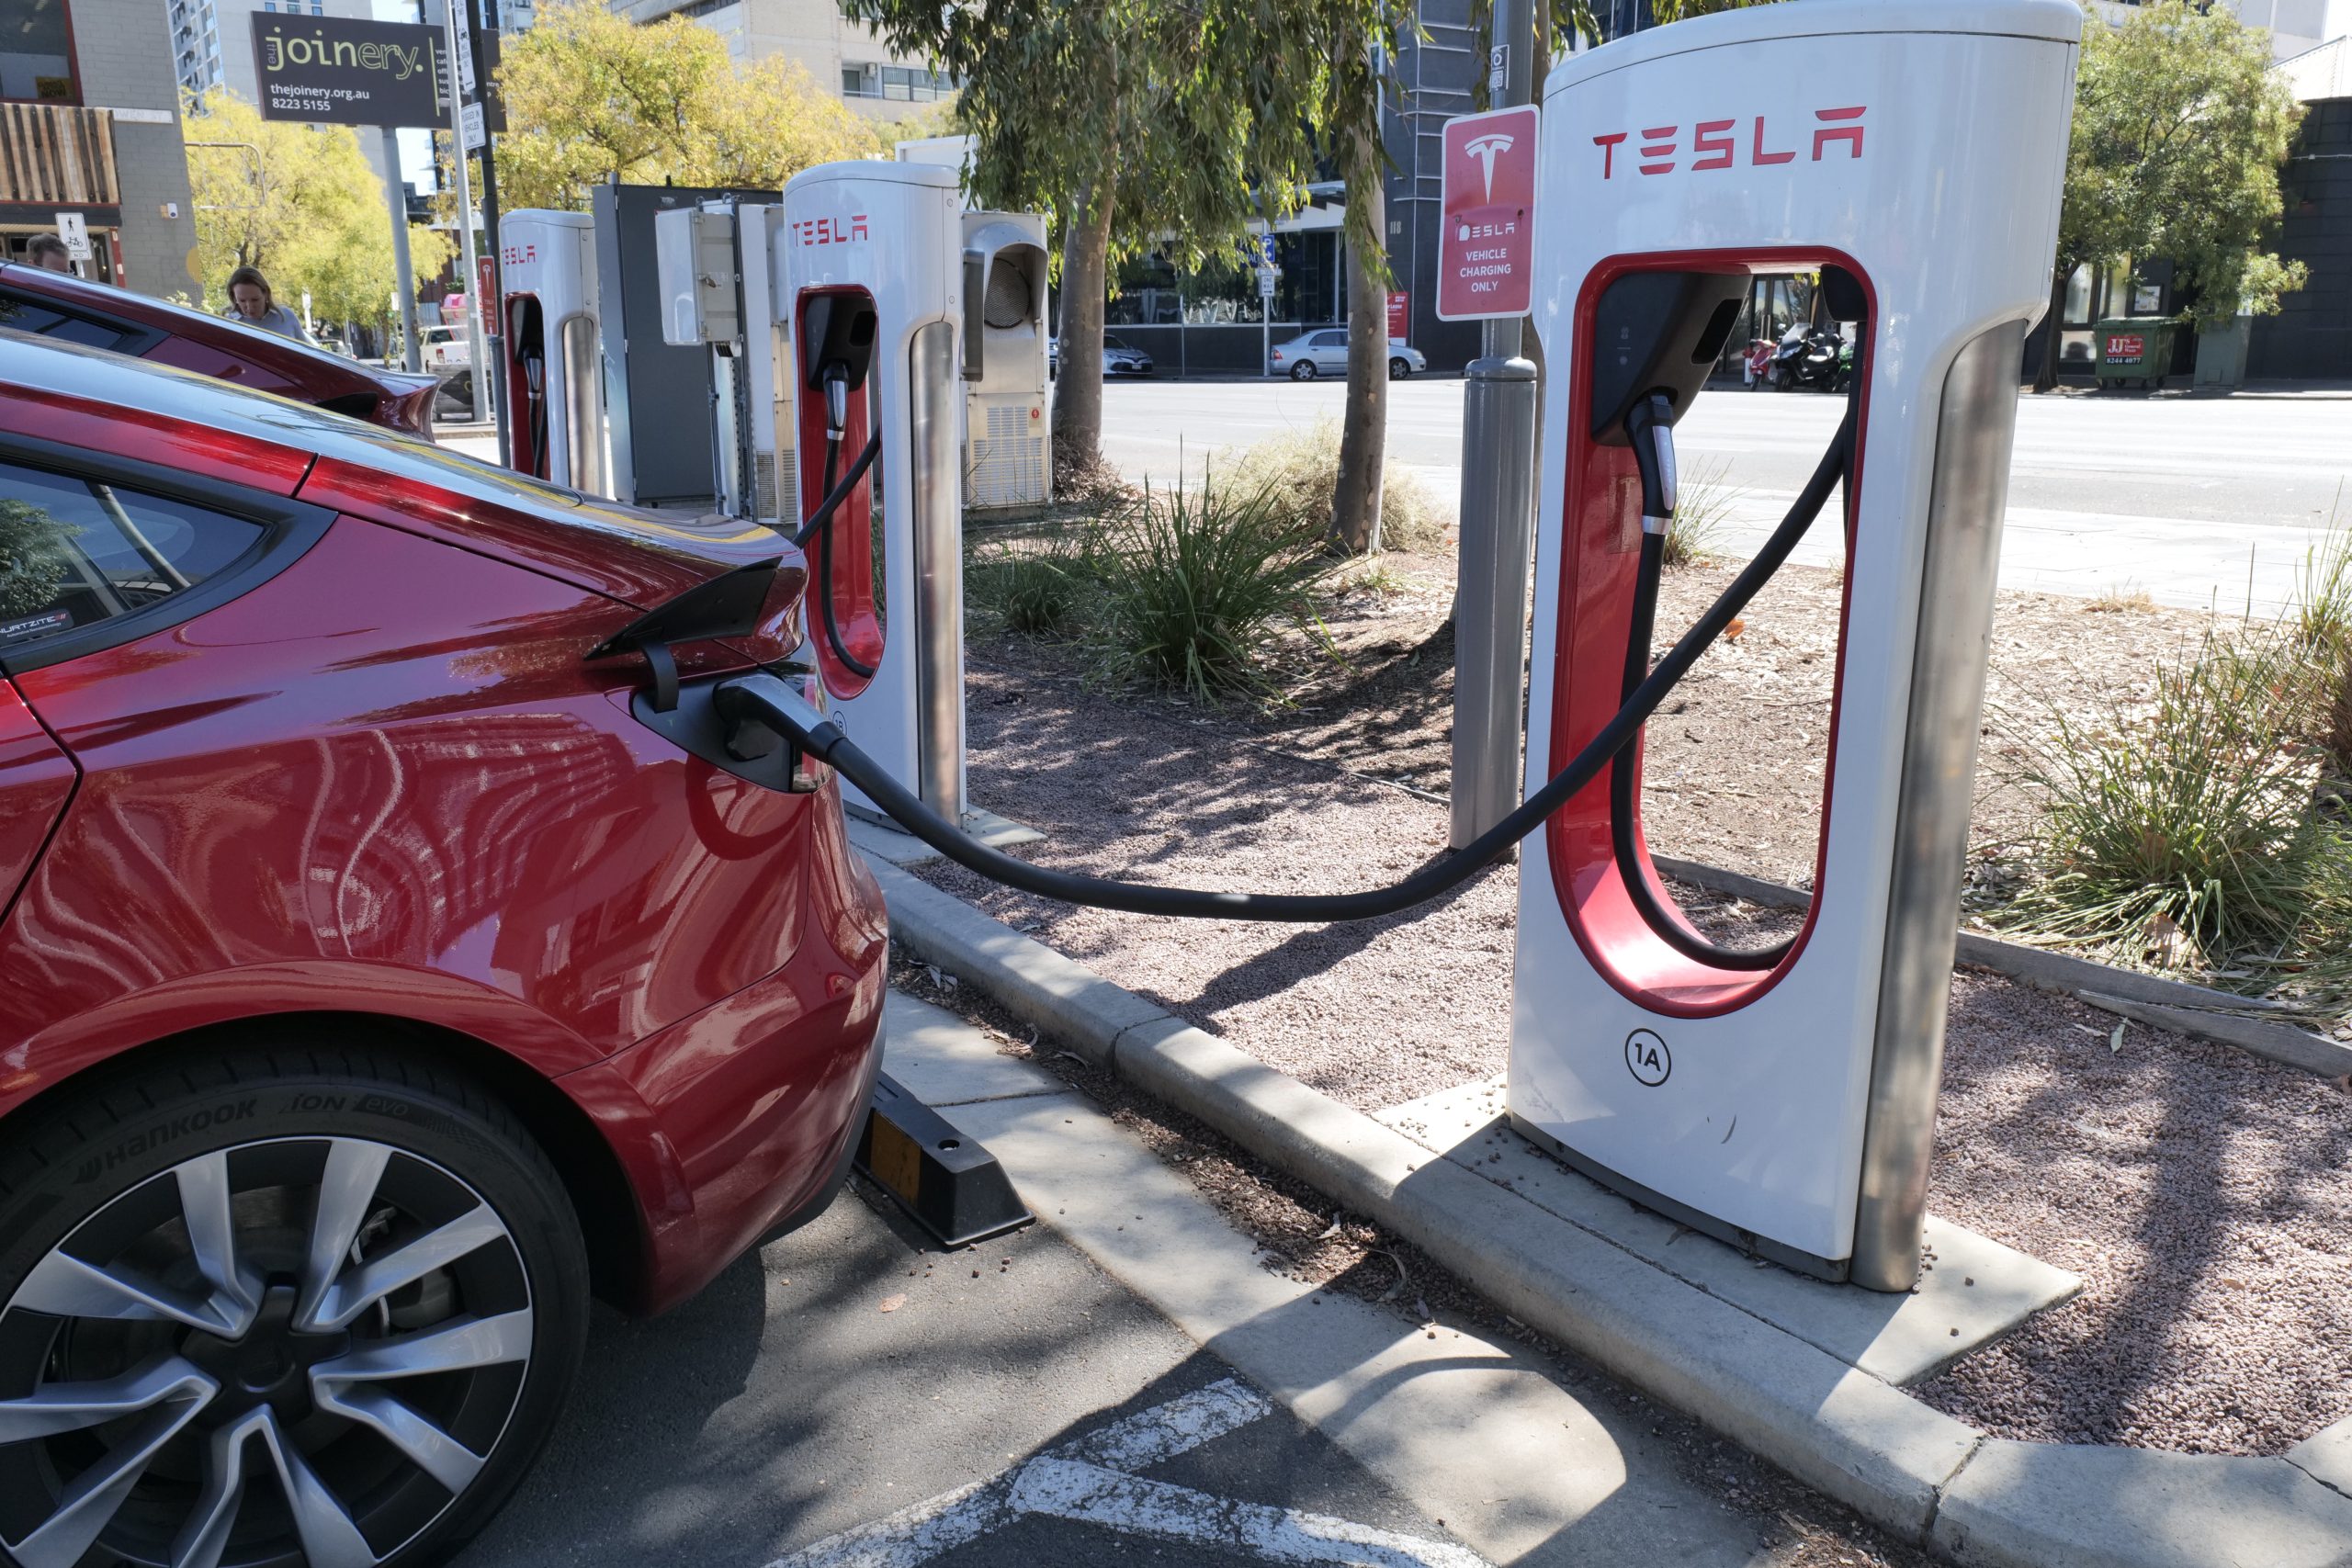 A Tesla Supercharger station